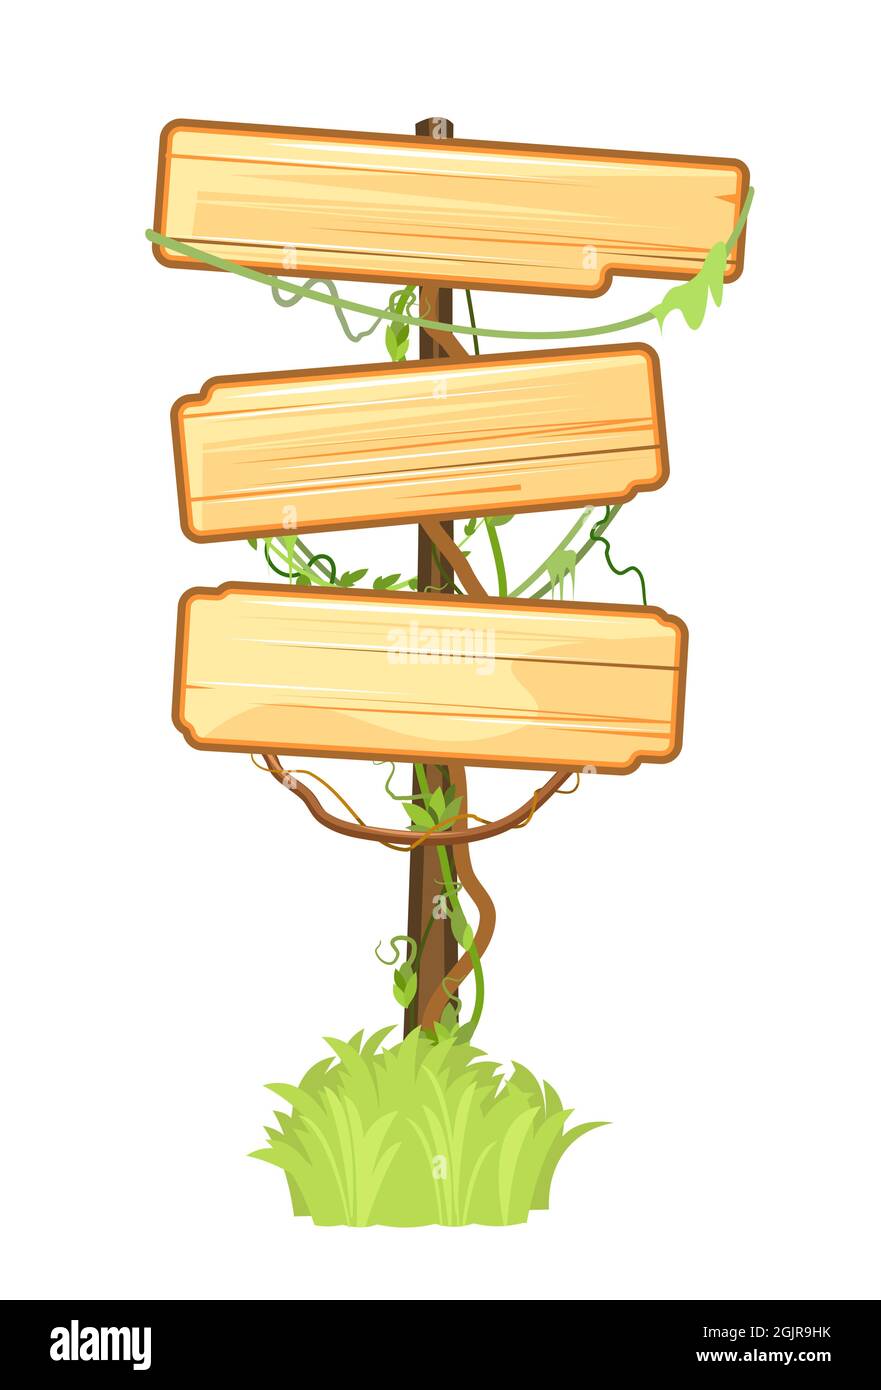 Holzschild im Dschungel. Drei Bedeutungen. Leeres Brett mit Platz für Text. Mit Holzstruktur. Steht auf einem Stock im Gras. Cartoon-Stil. Isoliert Stock Vektor